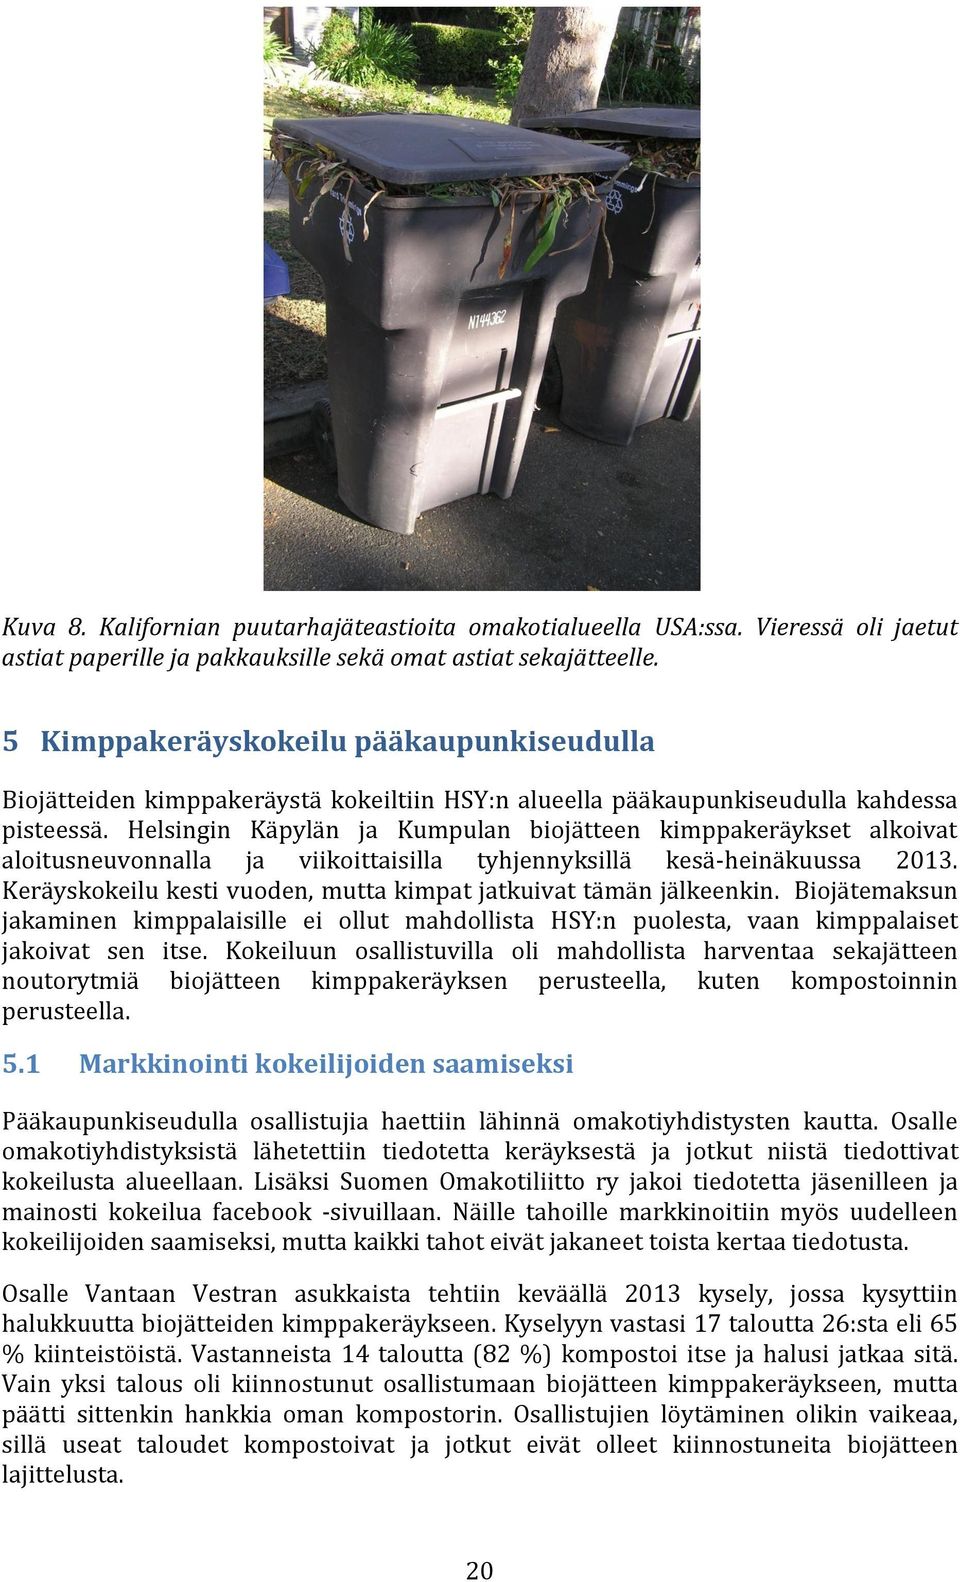 Helsingin Käpylän ja Kumpulan biojätteen kimppakeräykset alkoivat aloitusneuvonnalla ja viikoittaisilla tyhjennyksillä kesä-heinäkuussa 2013.